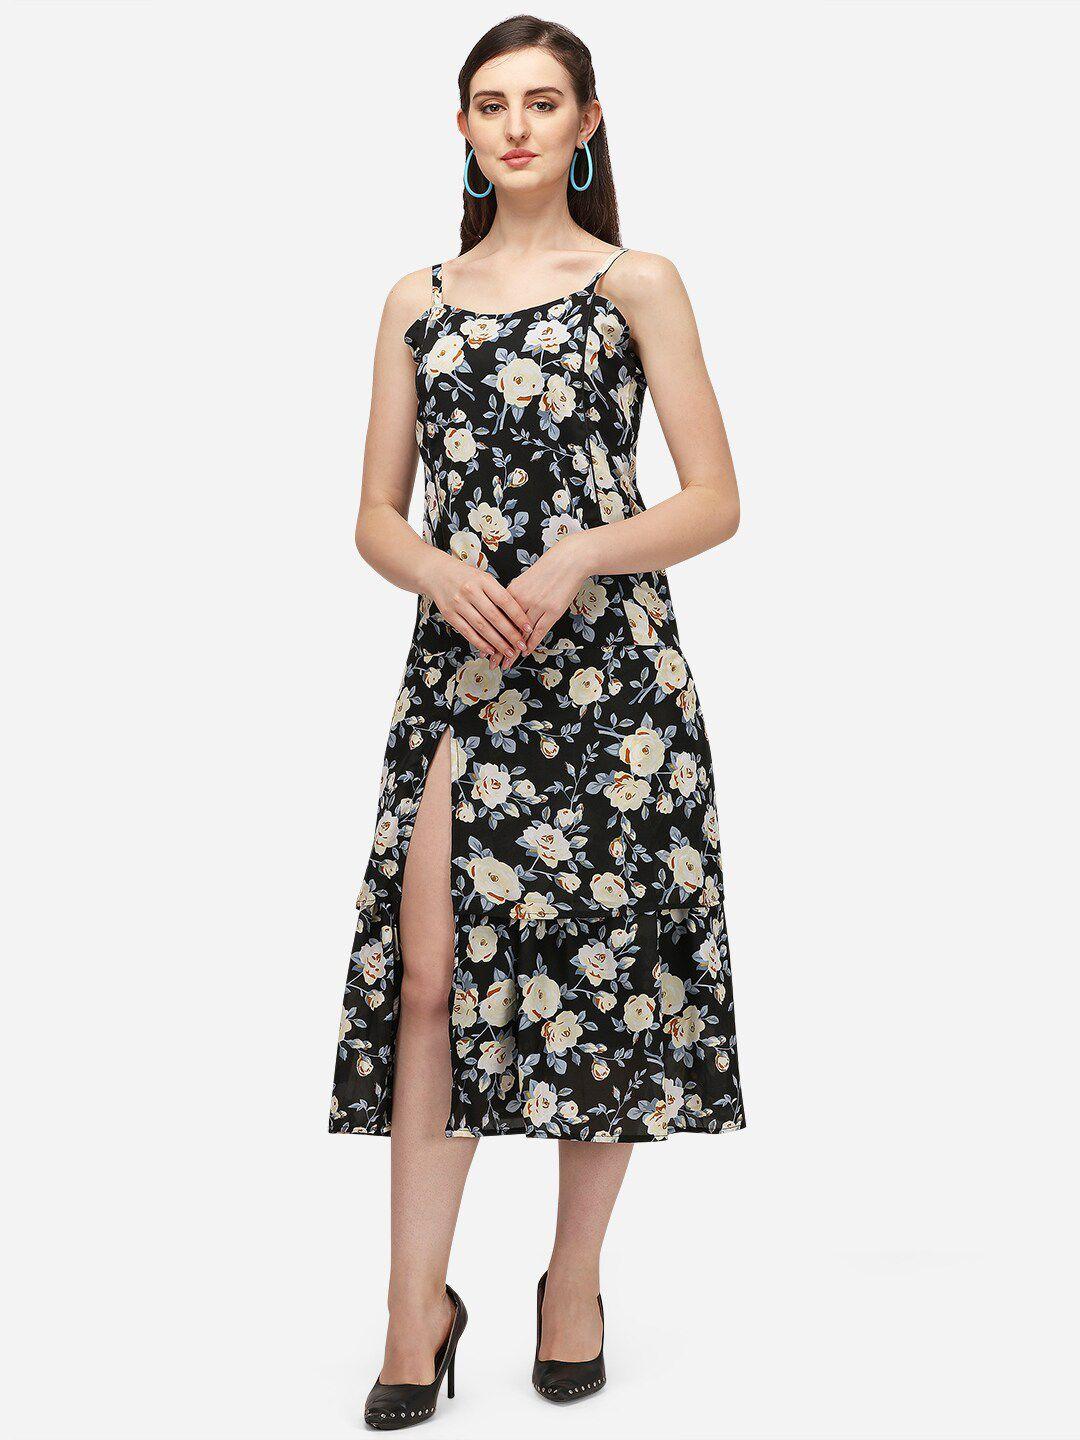 westhood floral printed shoulder straps front slit georgette tiered fit & flare dress